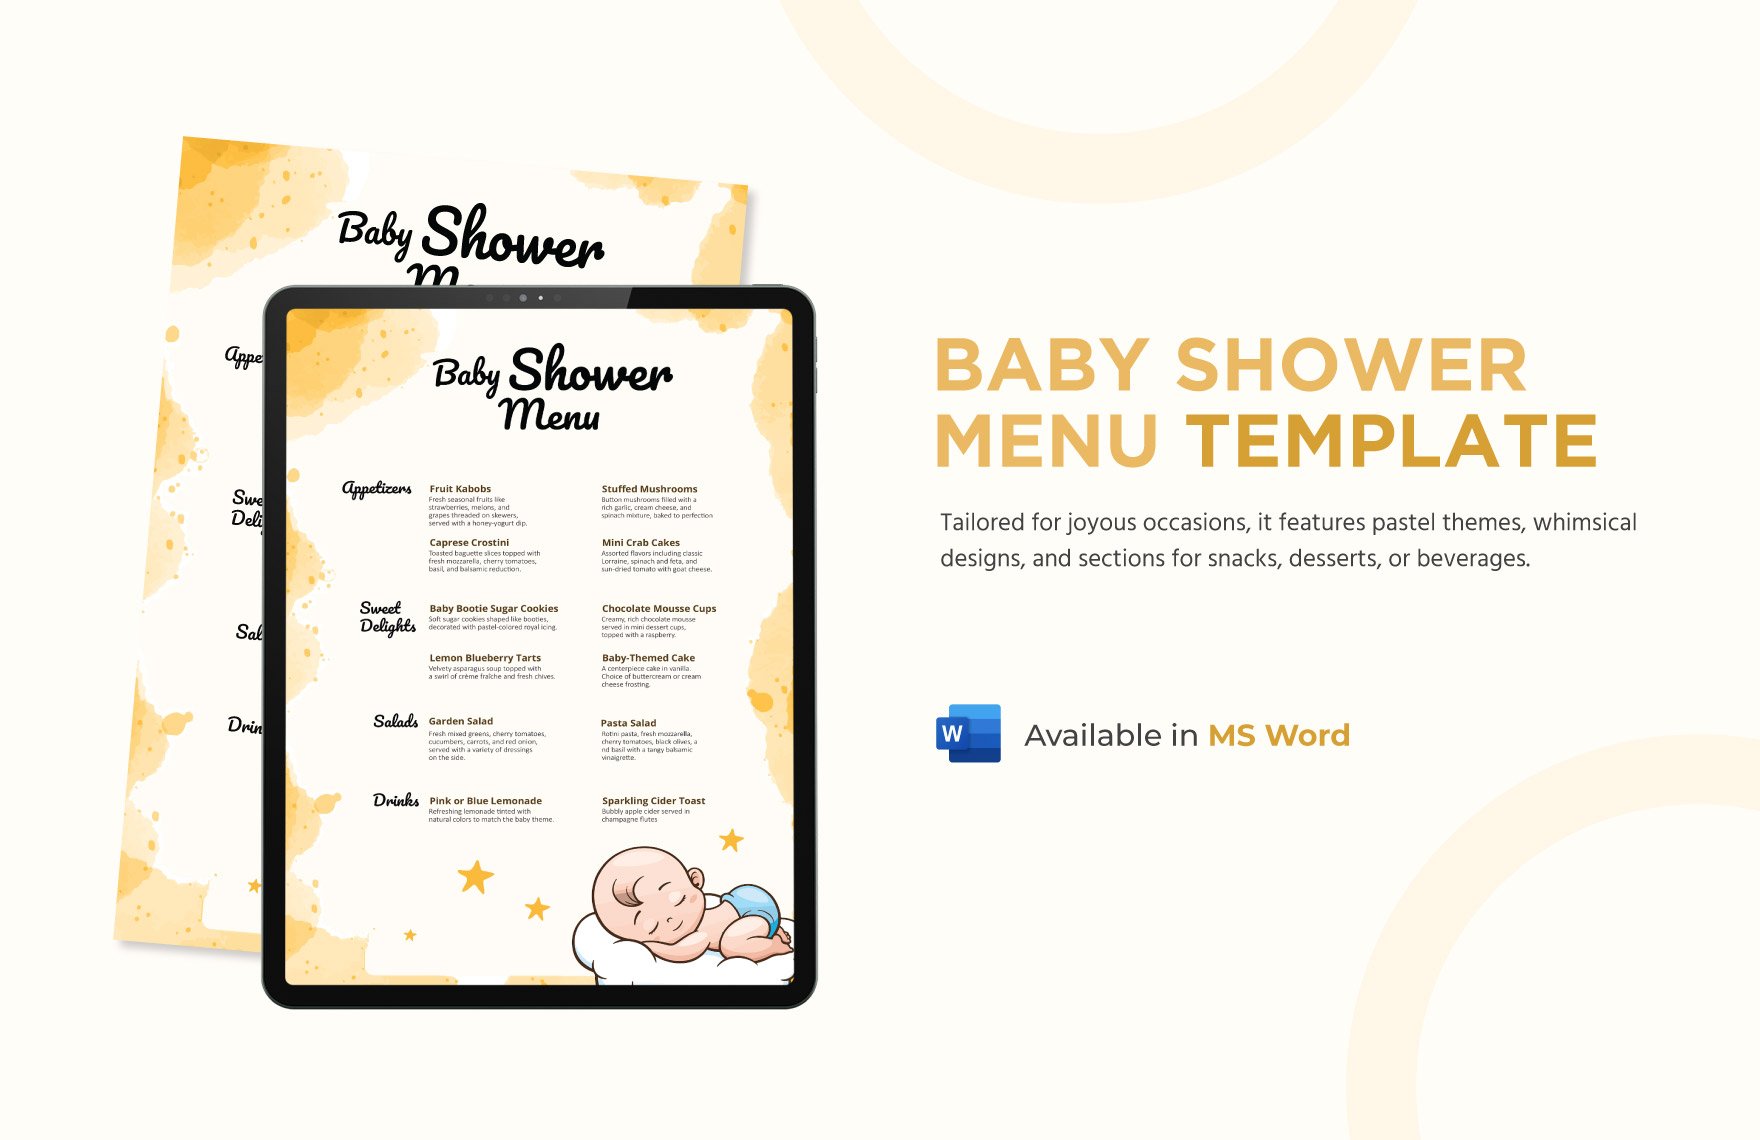 Baby Shower Menu Template in Word